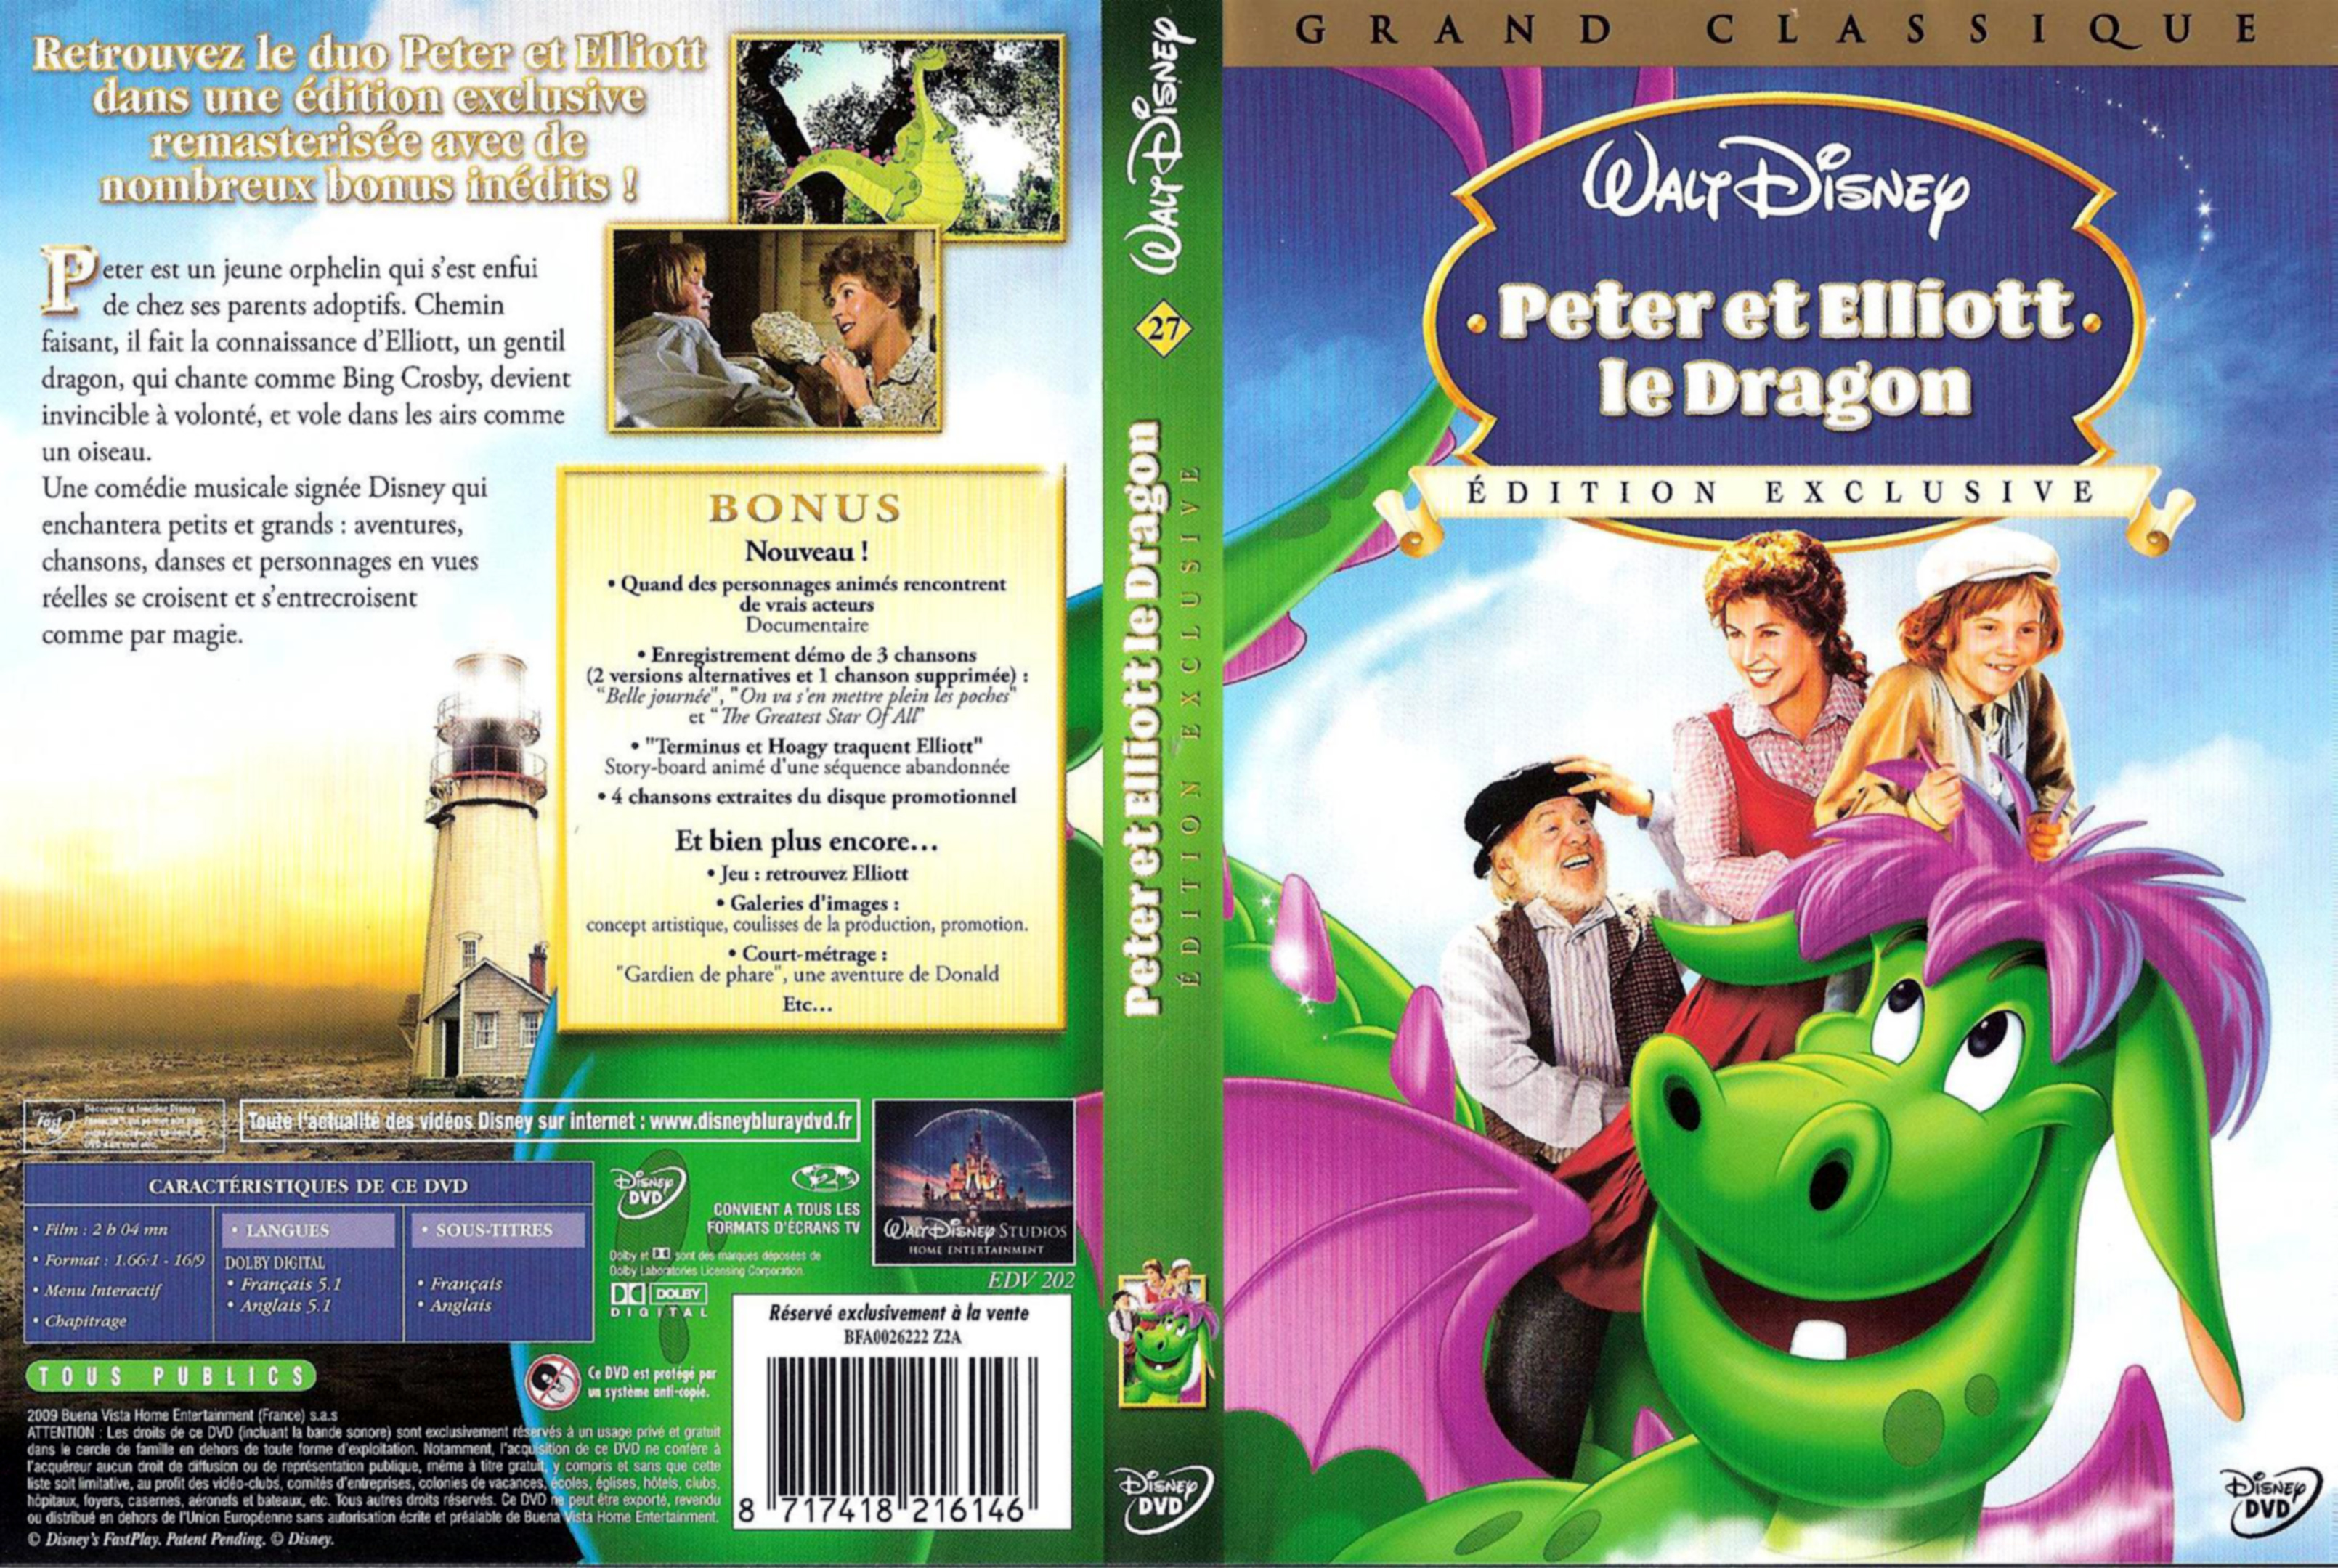 Jaquette DVD Peter et Elliot le dragon v2